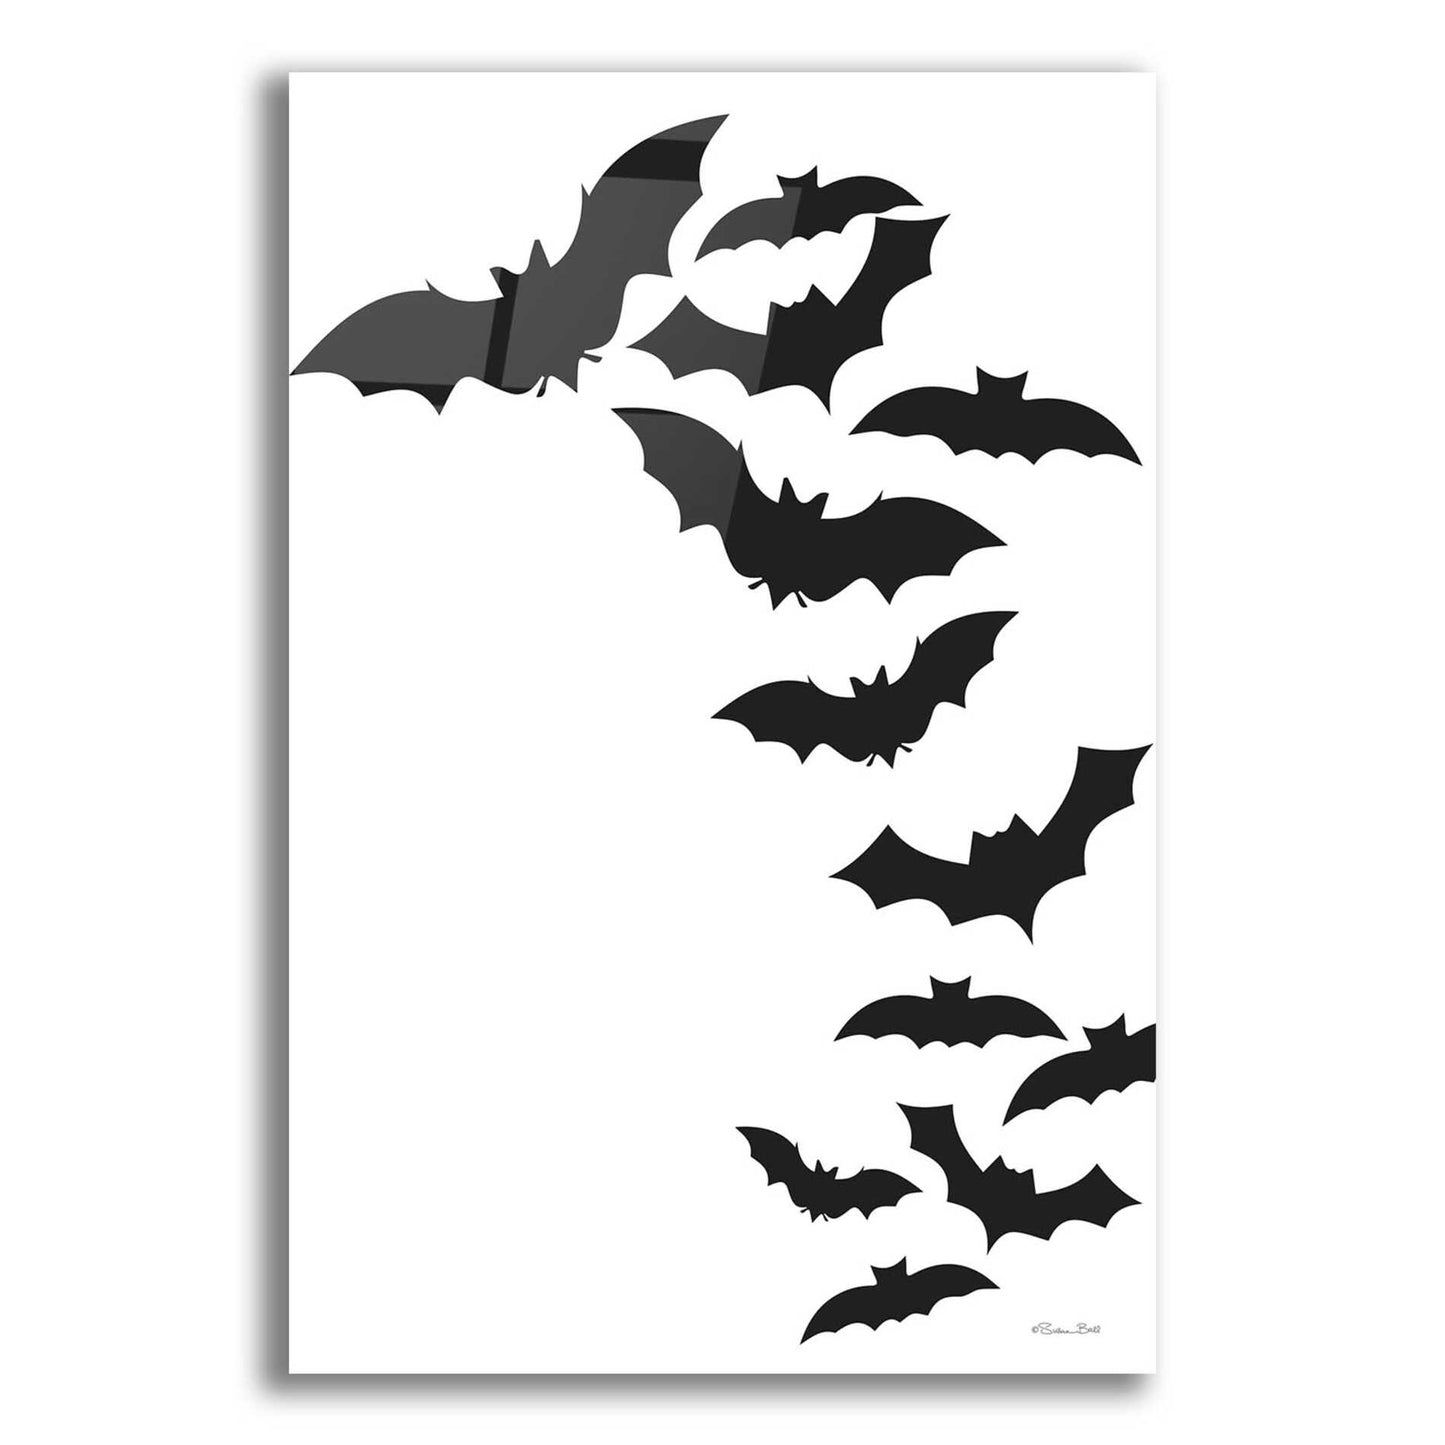 Epic Art 'Flock of Bats' by Susan Ball, Acrylic Glass Wall Art,16x24